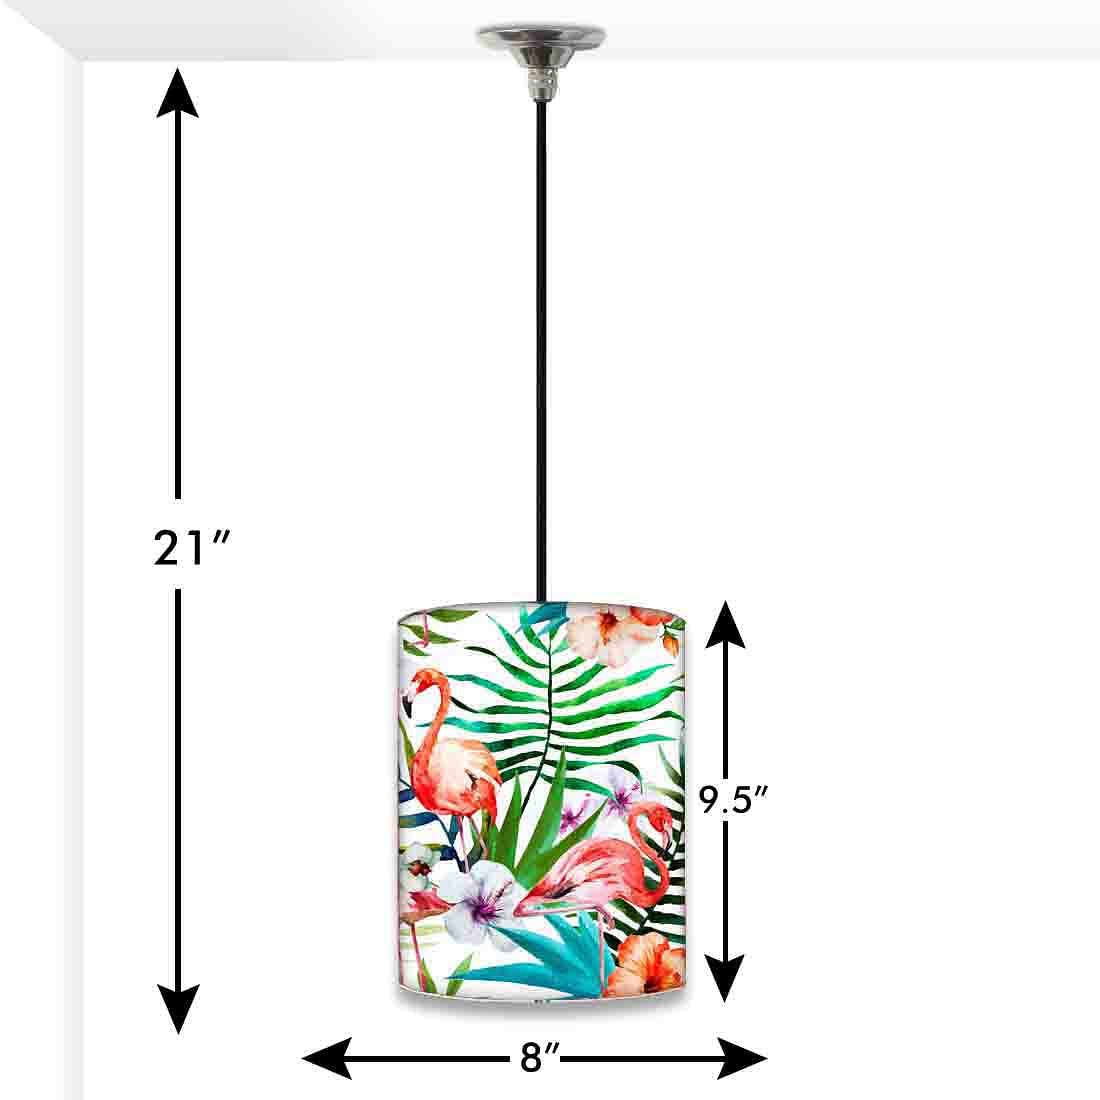 Mobo Glatt Ceramic Lamps for Living Room | Forest Homes